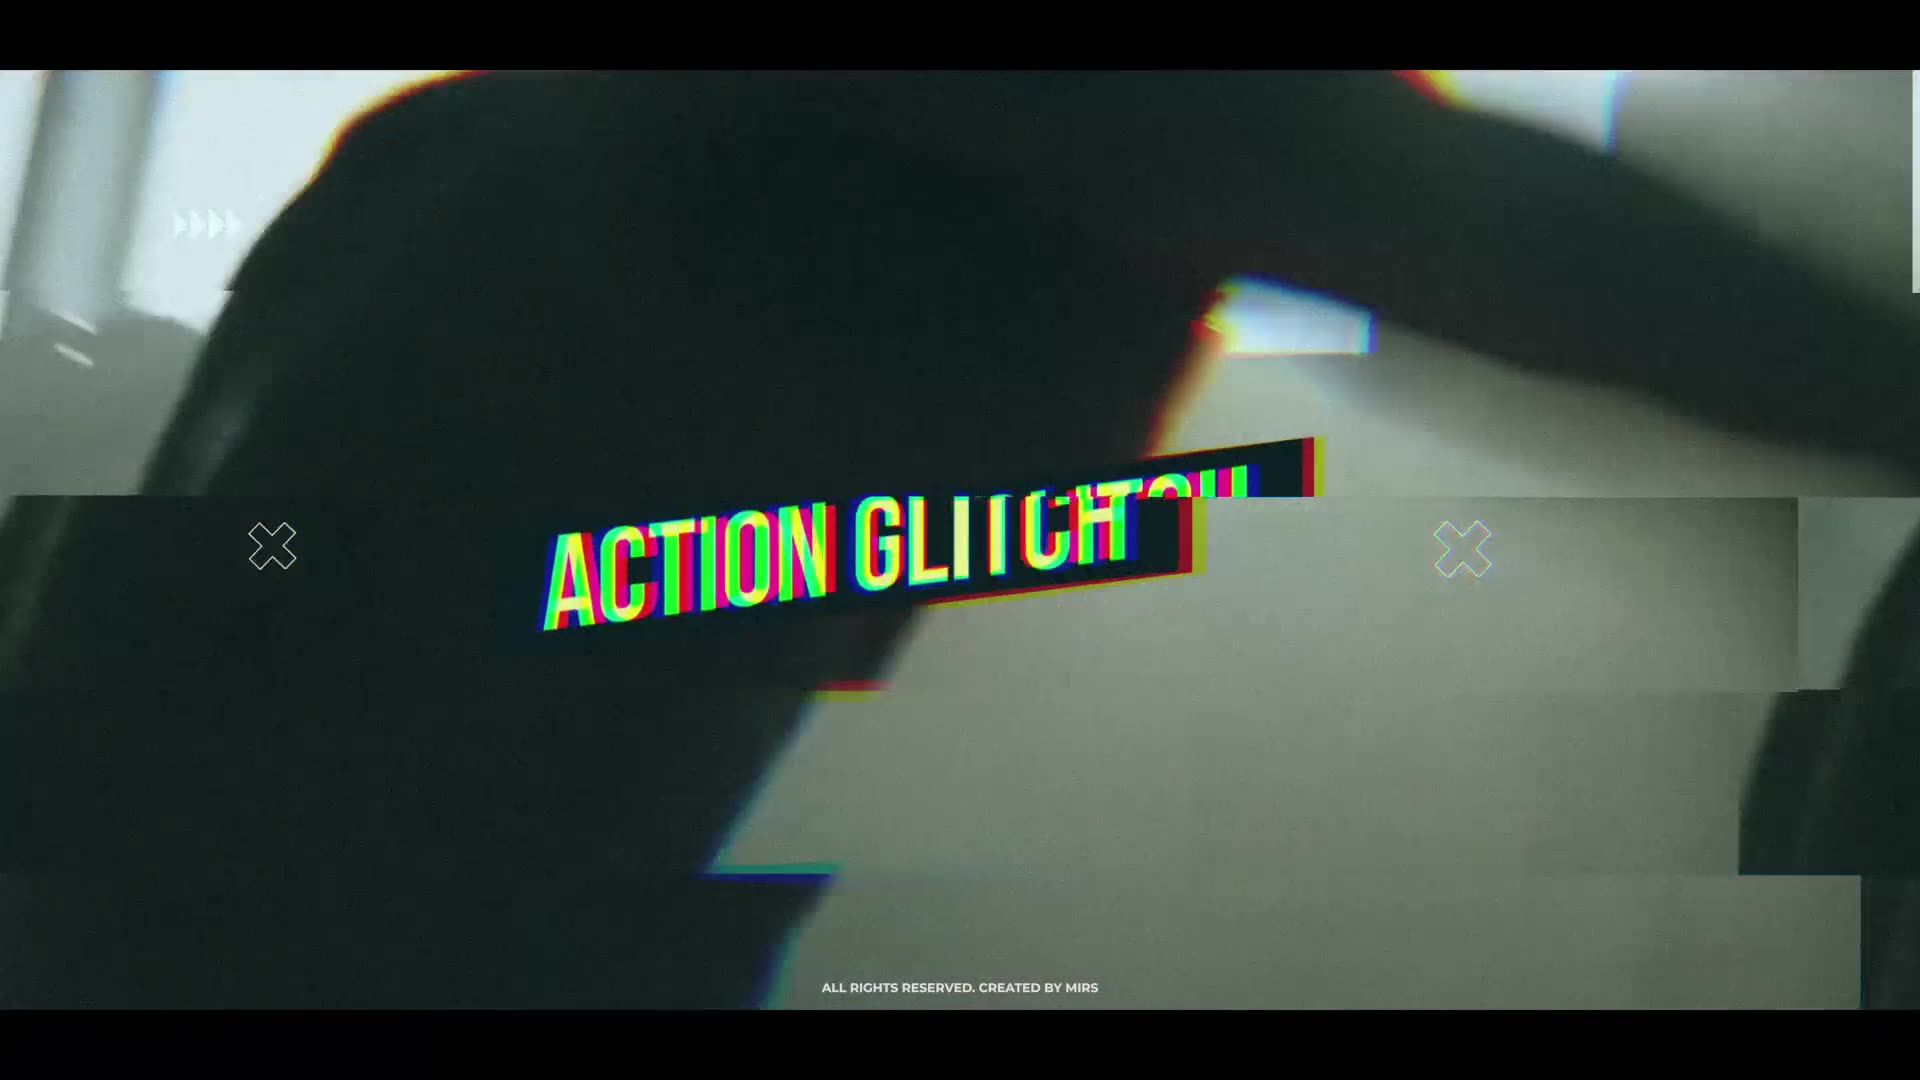 Action Glitch Opener Videohive 23067675 Premiere Pro Image 2